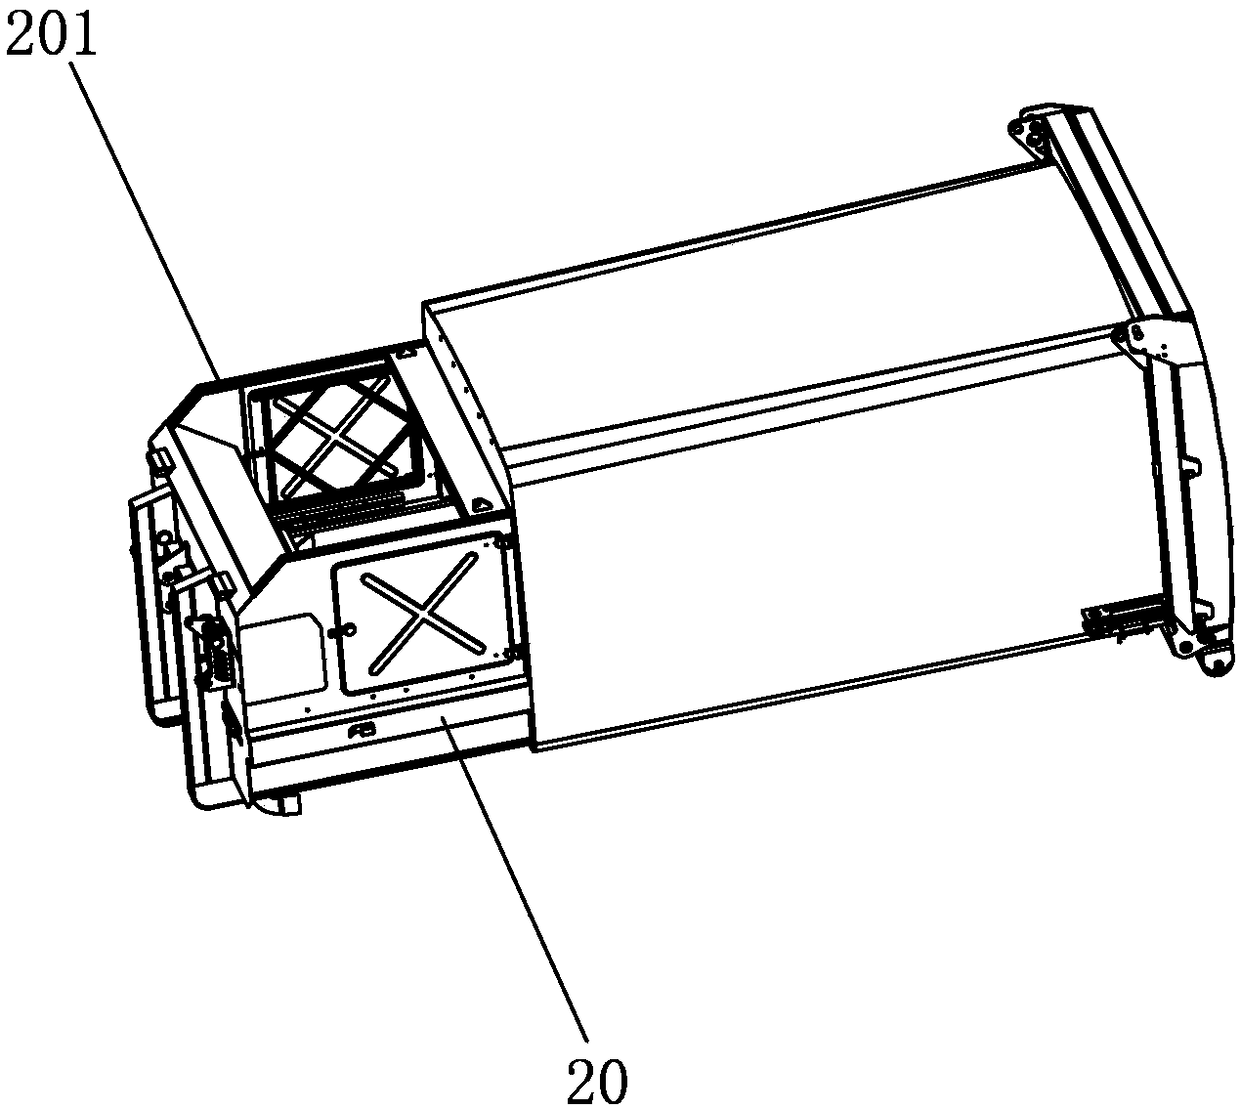 Door opening mechanism of waste compaction box